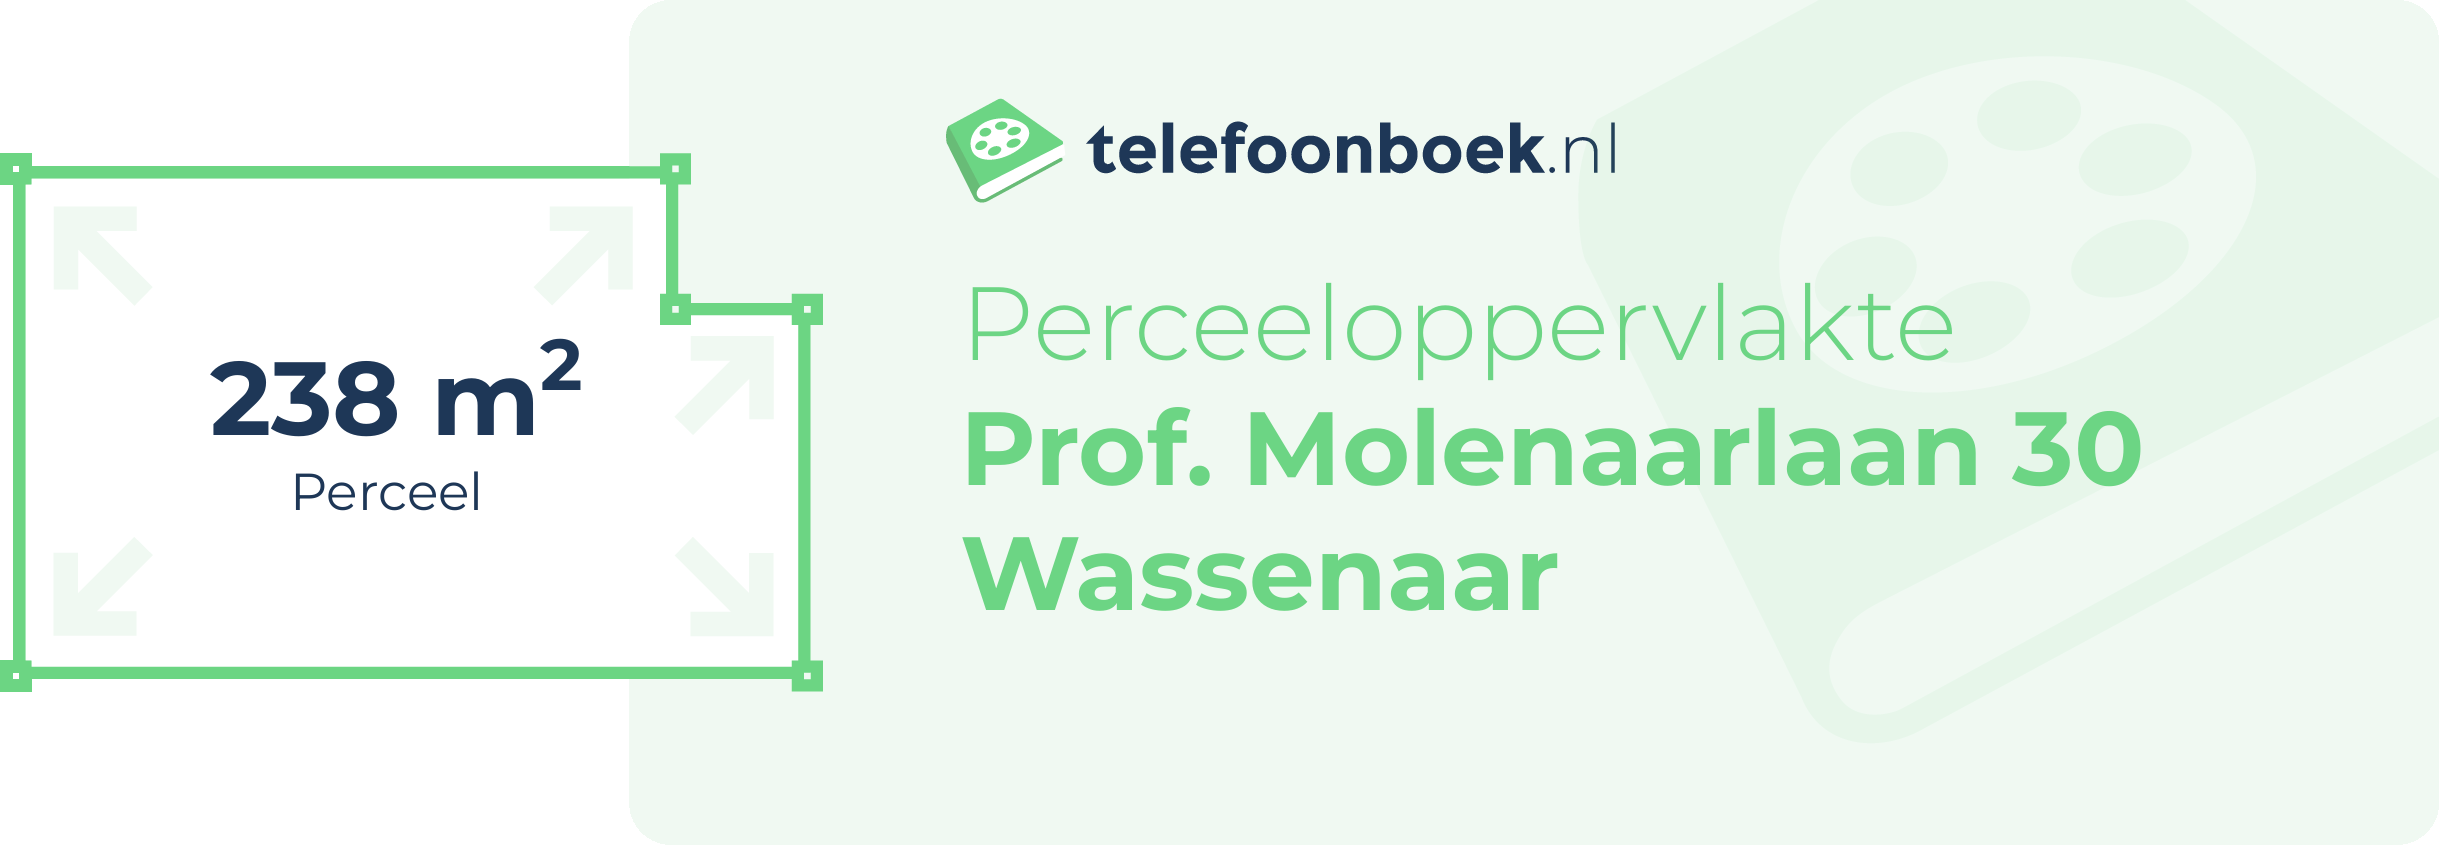 Perceeloppervlakte Prof. Molenaarlaan 30 Wassenaar